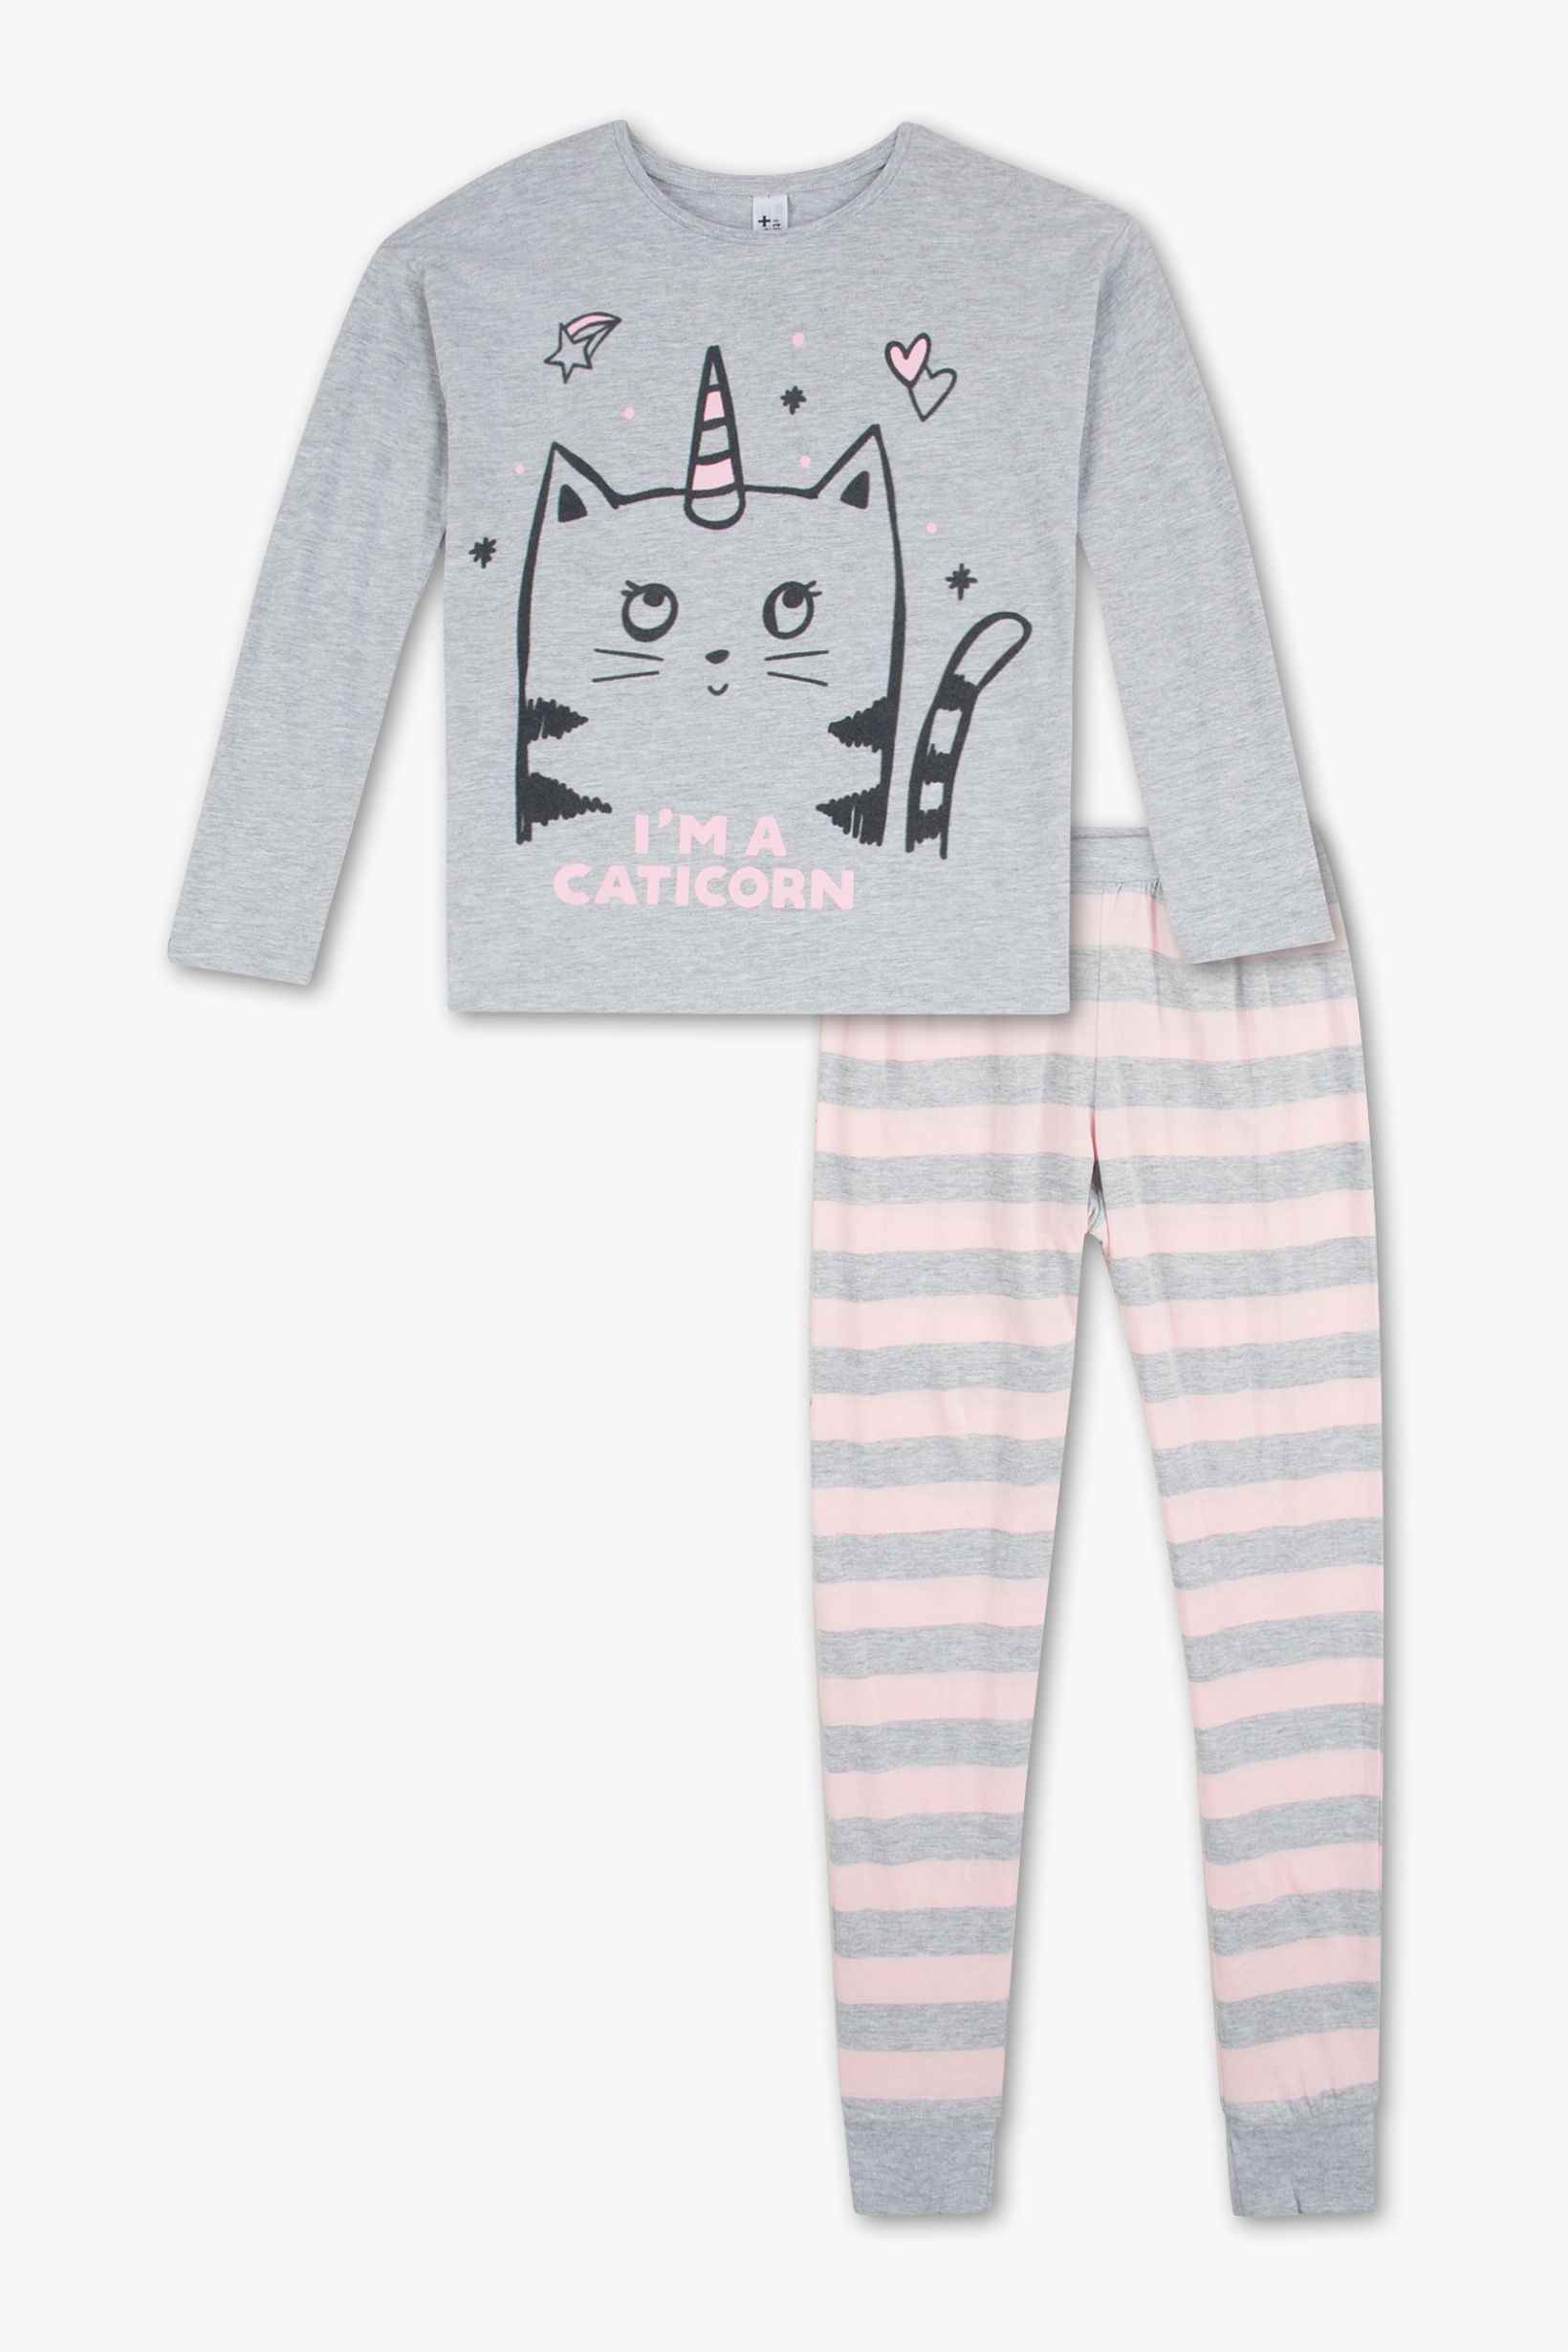 C&a pyjama bebe